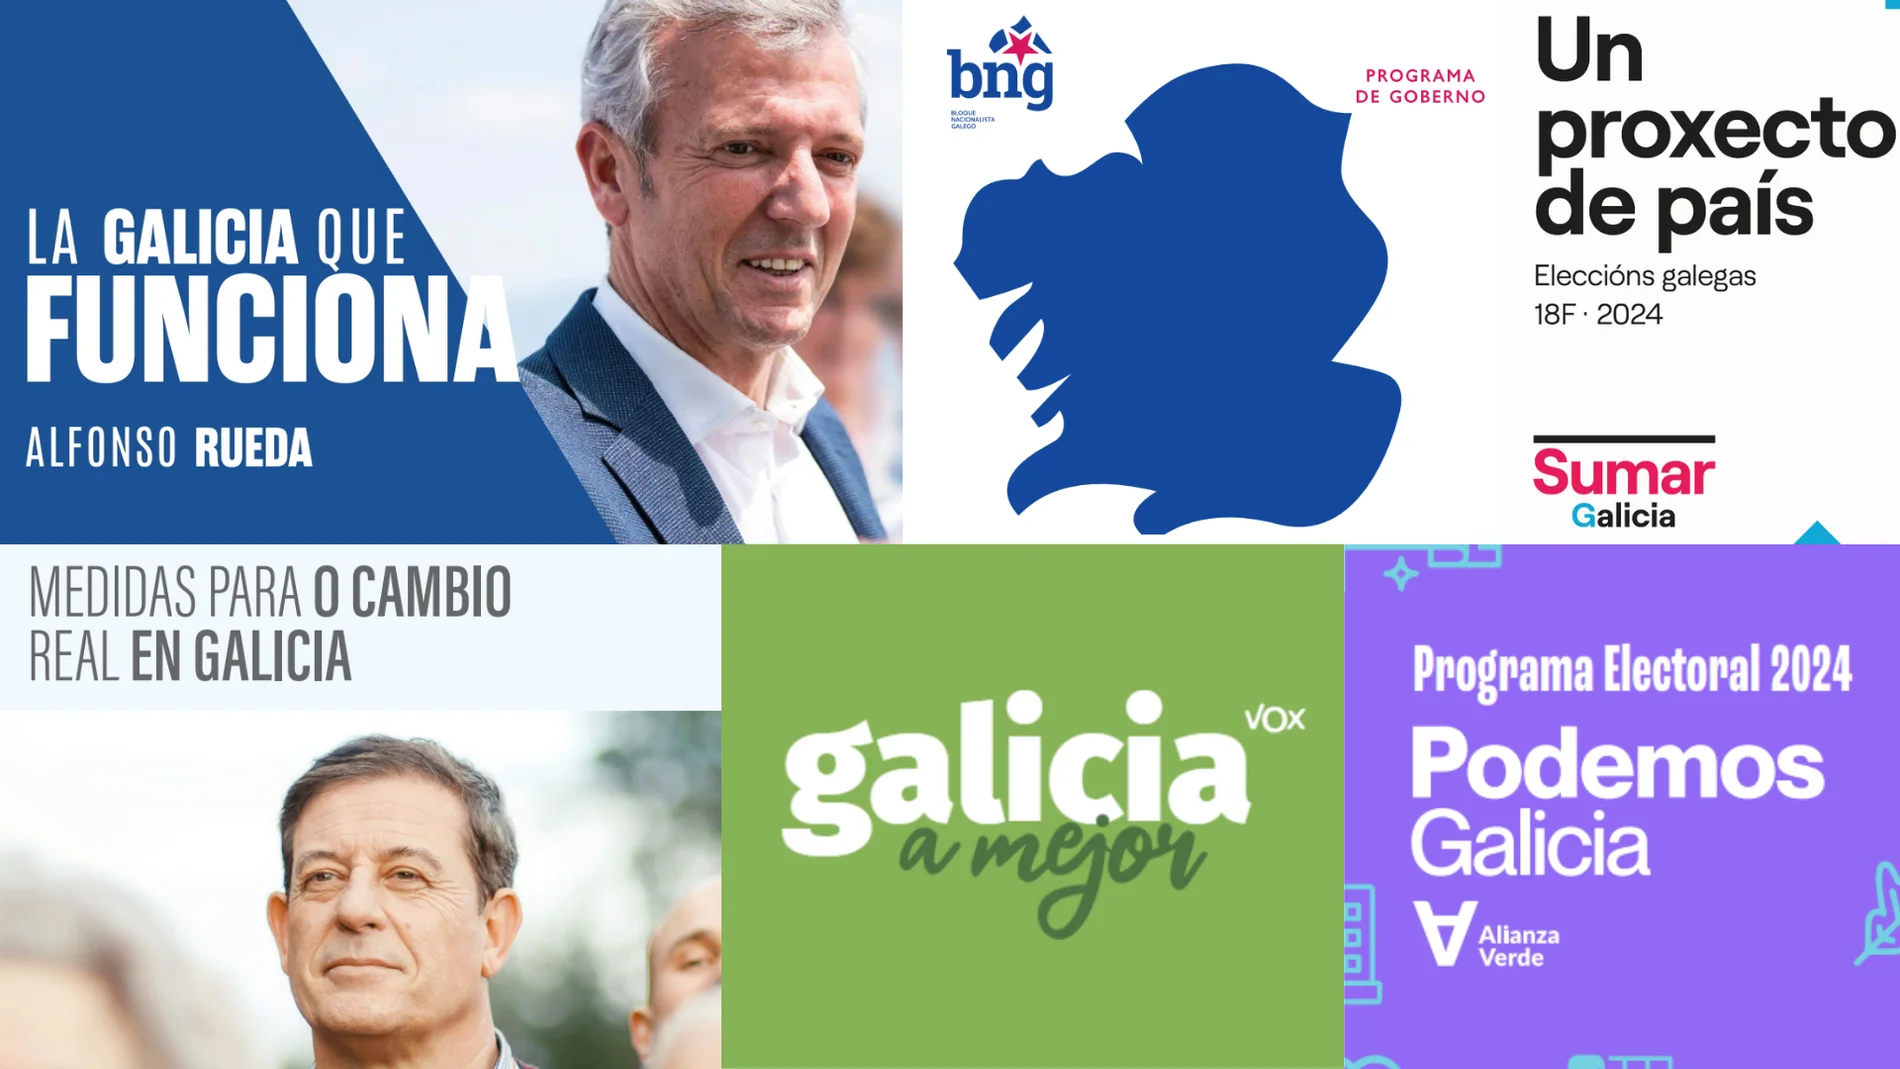 Portadas de los programas electorales de los principales partidos que se presentan a las elecciones gallegas del 18F.